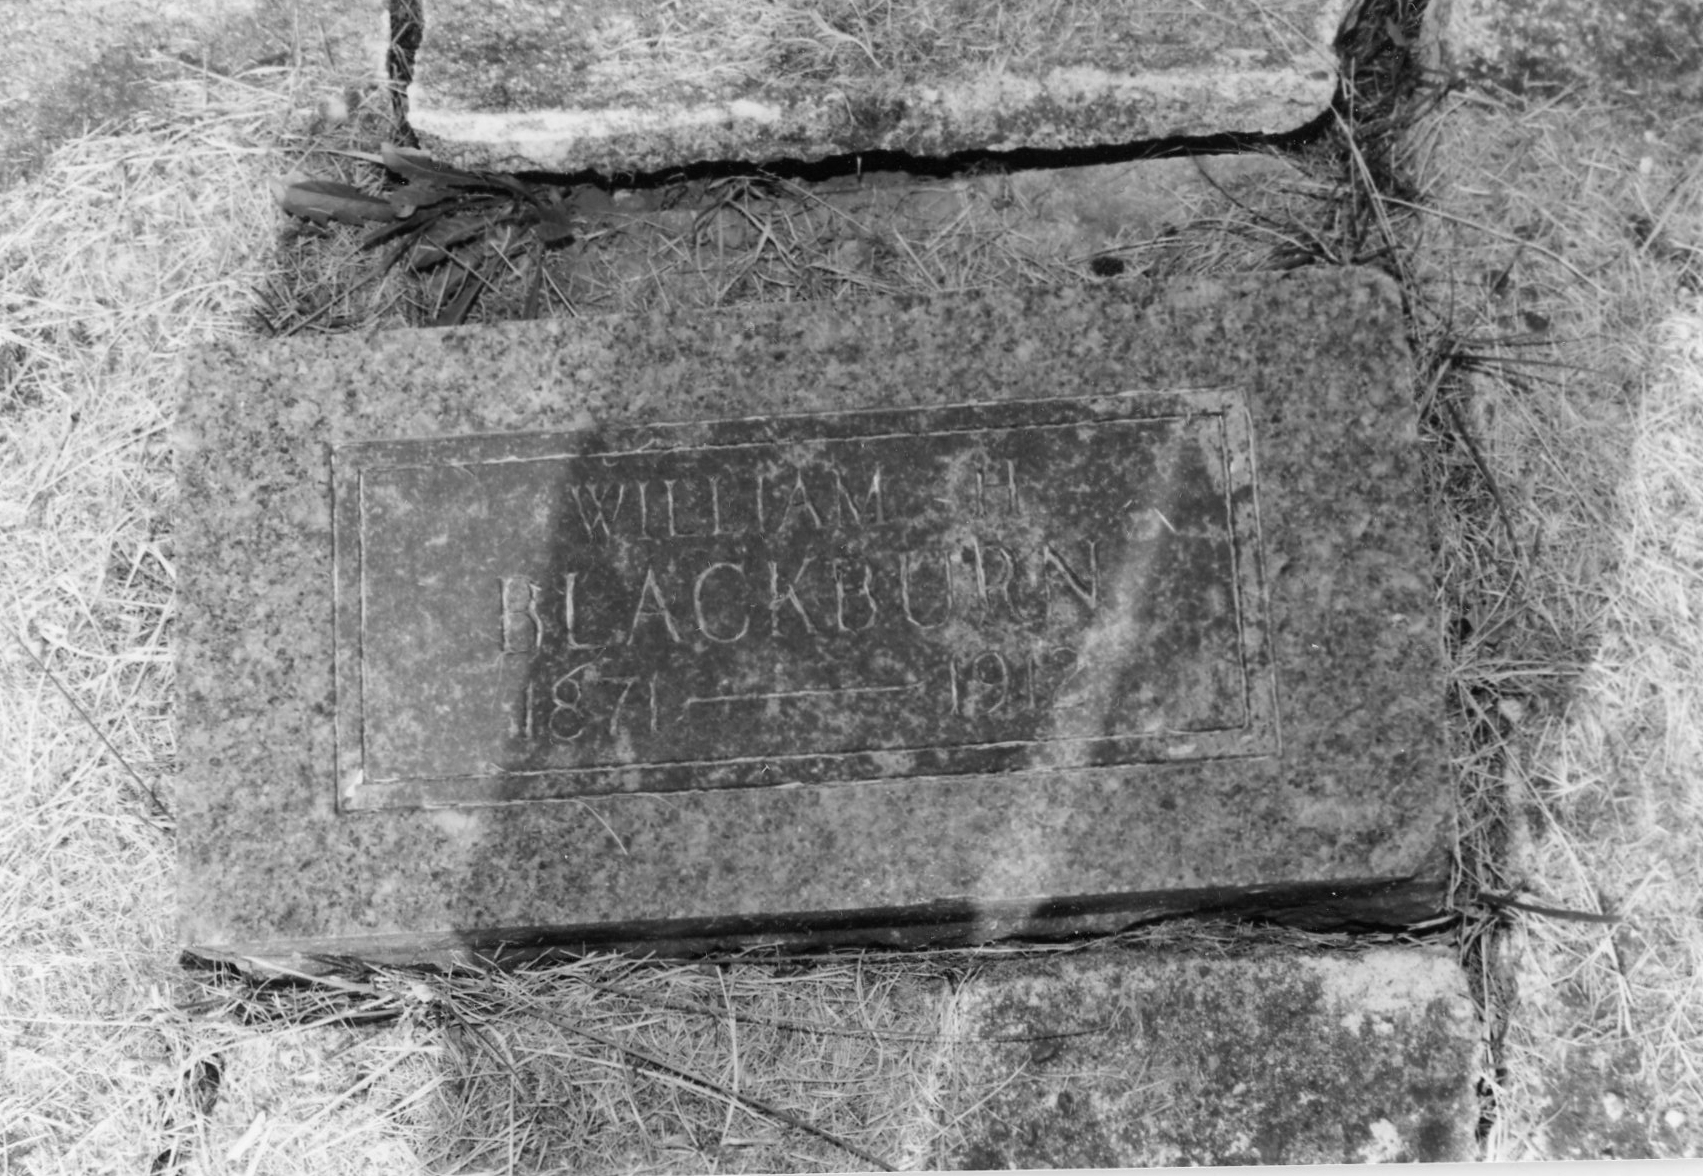 Blackburn, William H